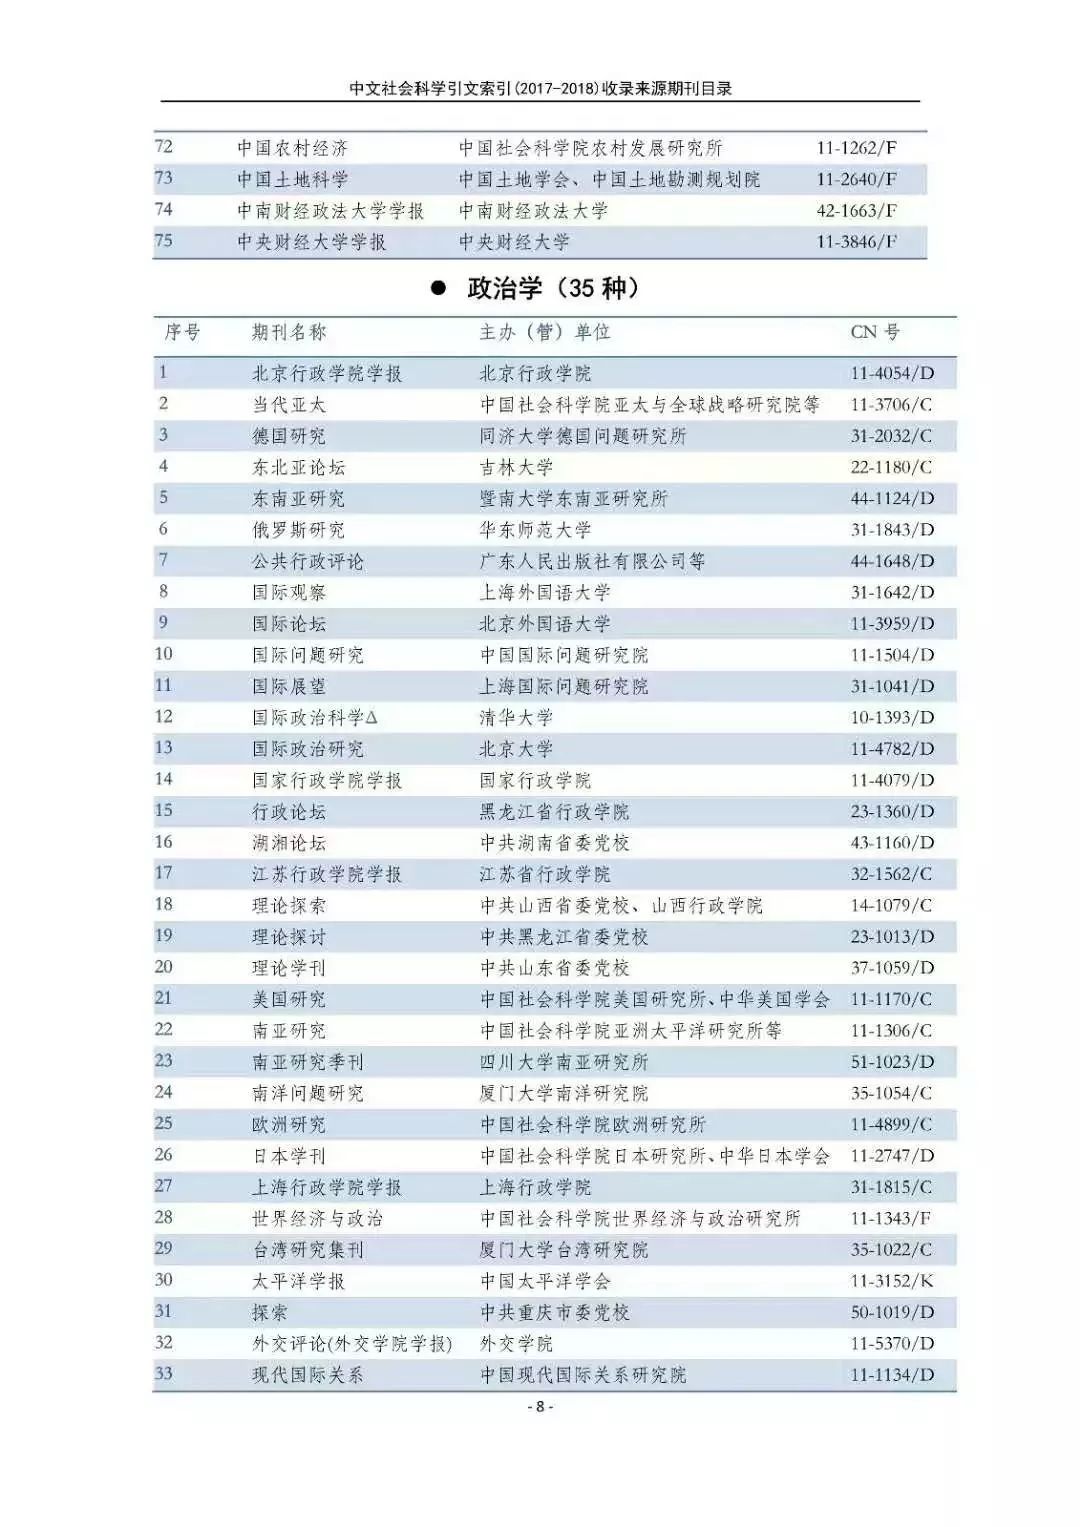 南大核心CSSCI最全名单(官网发布)!